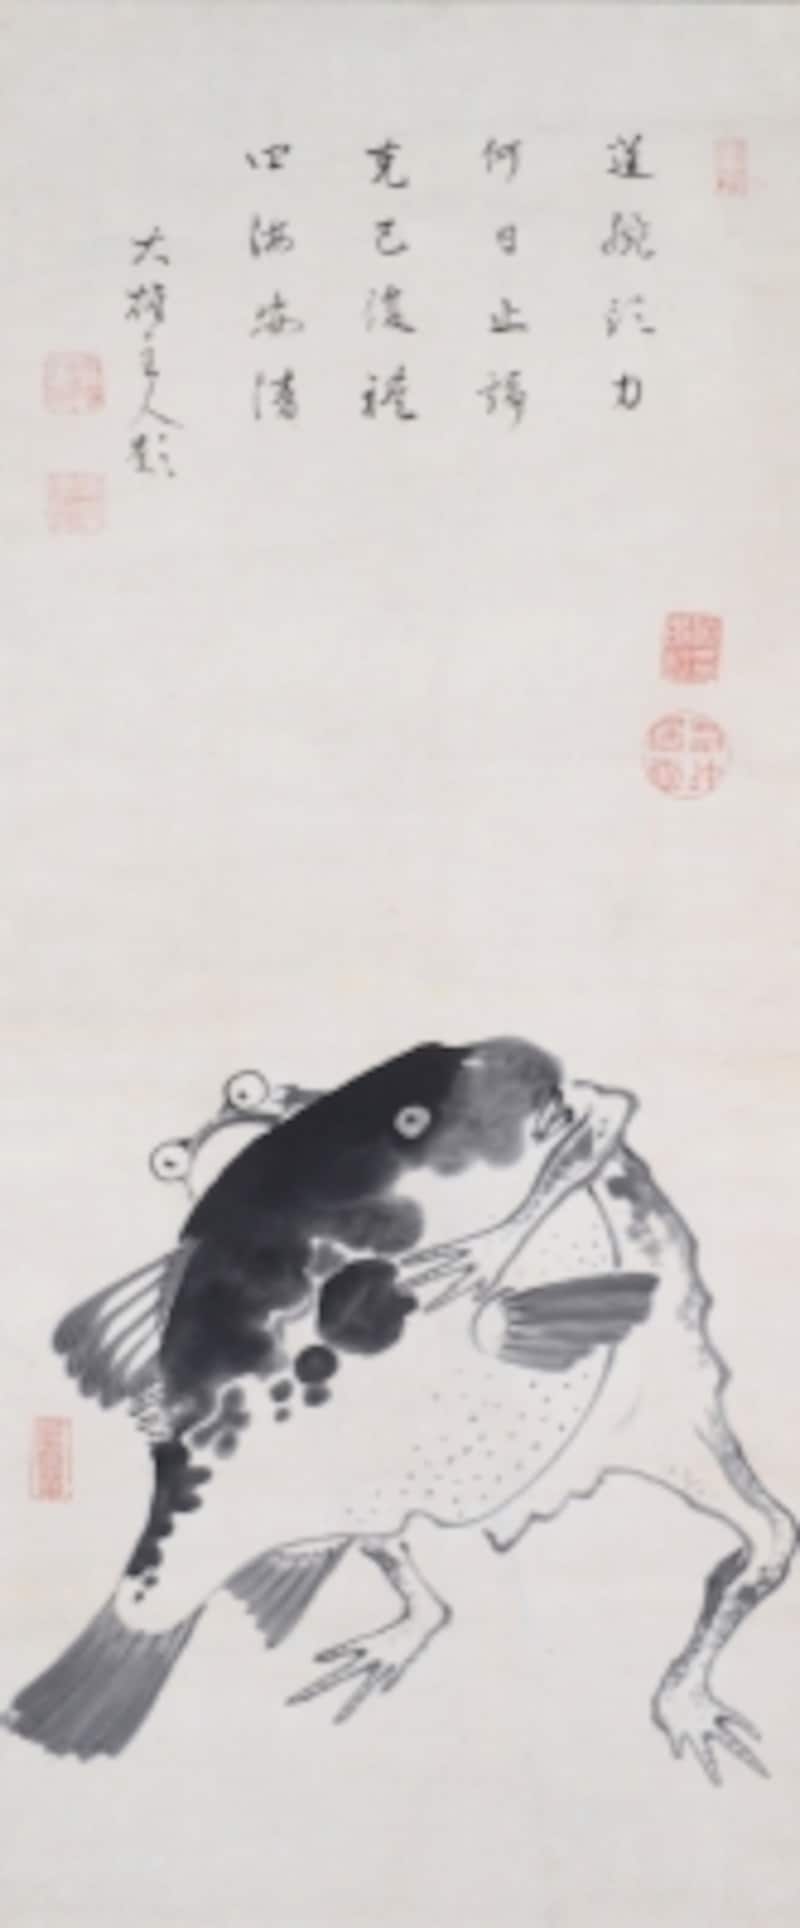 伊藤若冲《河豚と蛙の相撲図》18世紀(江戸時代)